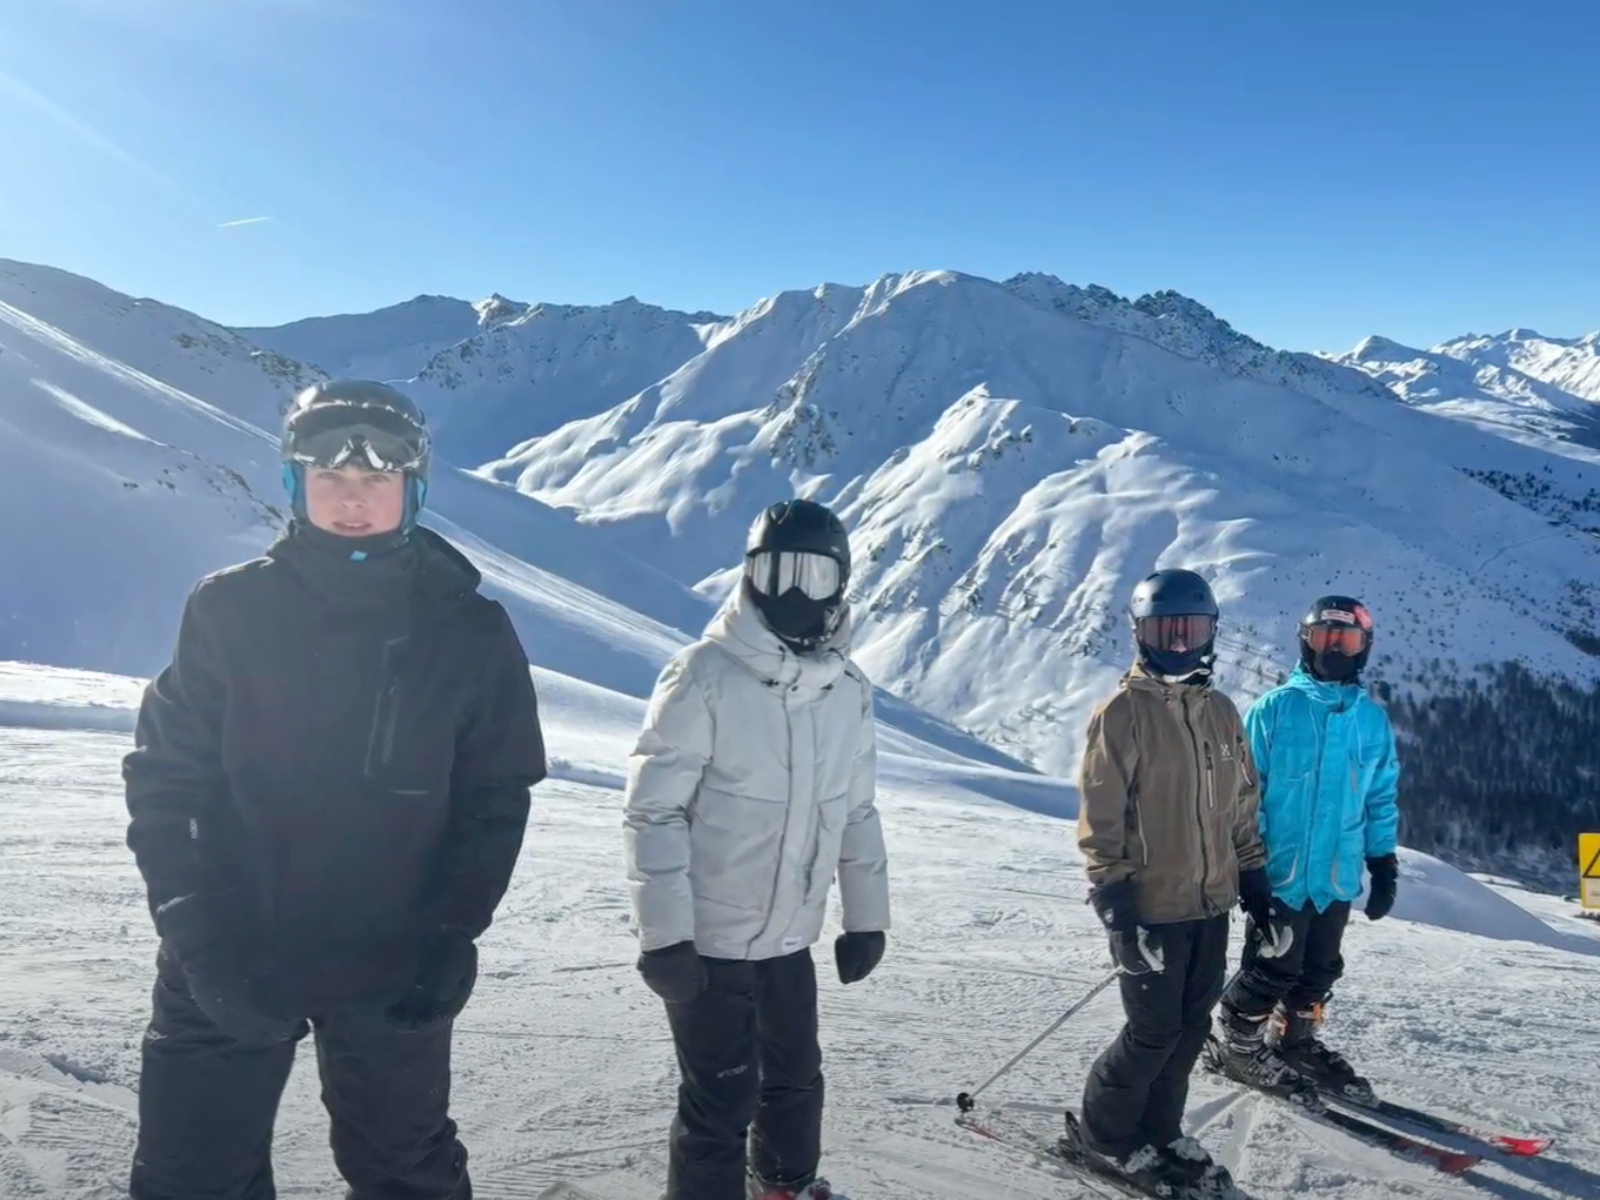 Fire elever smiler til kameraet på skitur med folkeskole